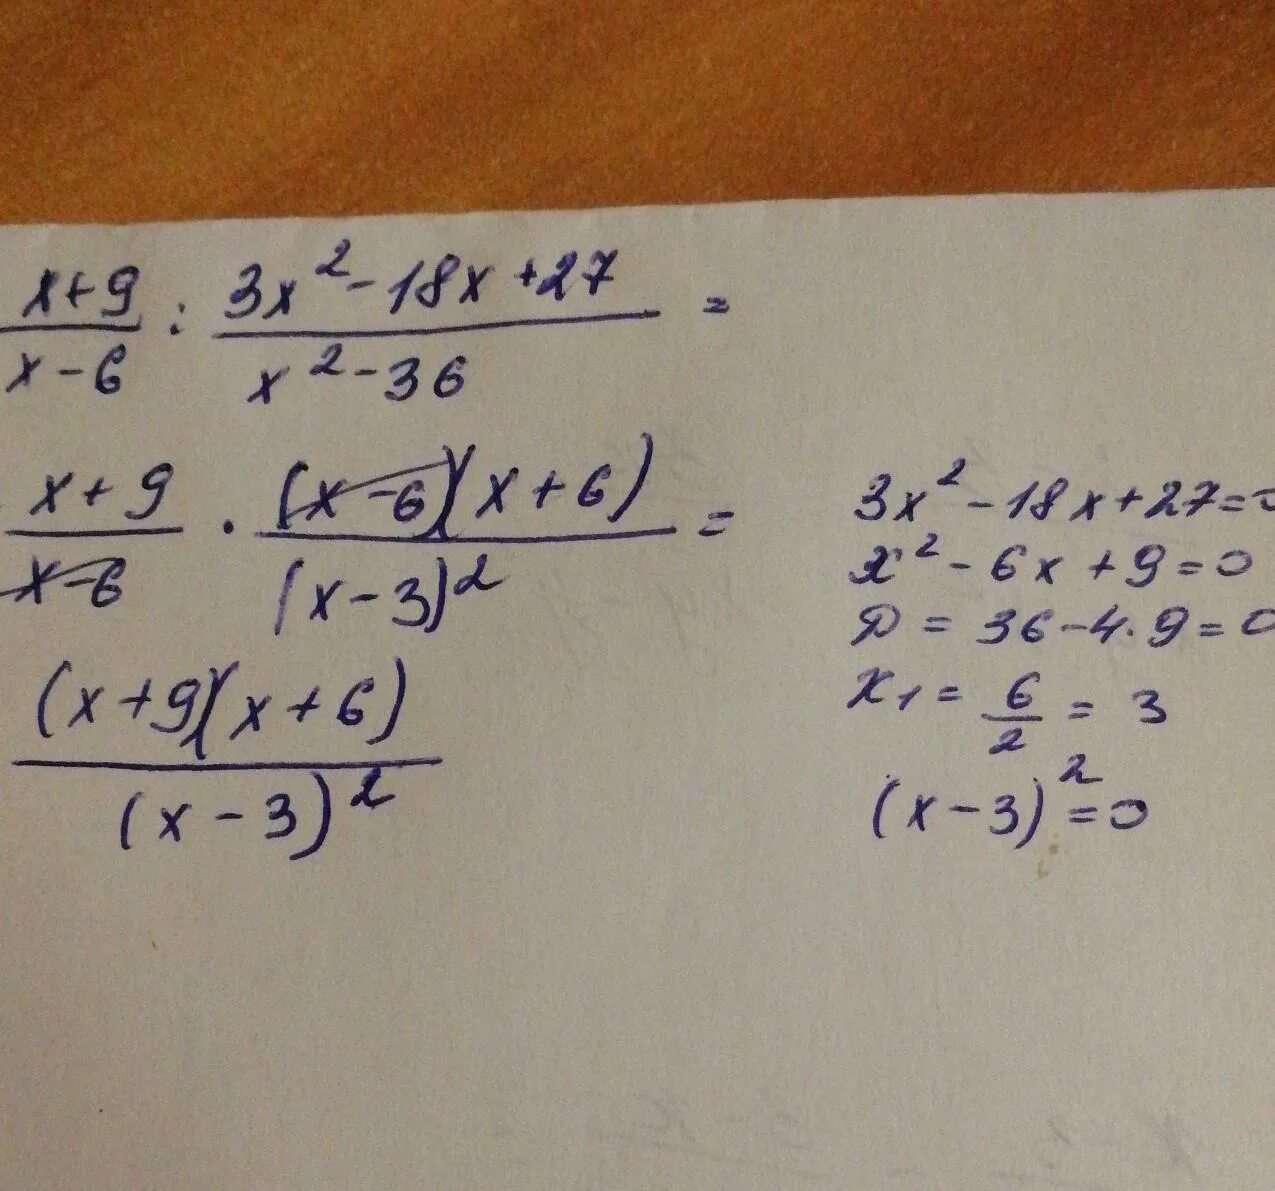 3x 6 6x 9 0. Упростить выражение x2-9/x-6 2 - 27 6x-x 2. X-9/x2-9 3/3x-x2 упростите выражение. 3/X+3+3/x2-3x+2x/9-x2 упростите выражение. X^3-9x^2+27x-27.